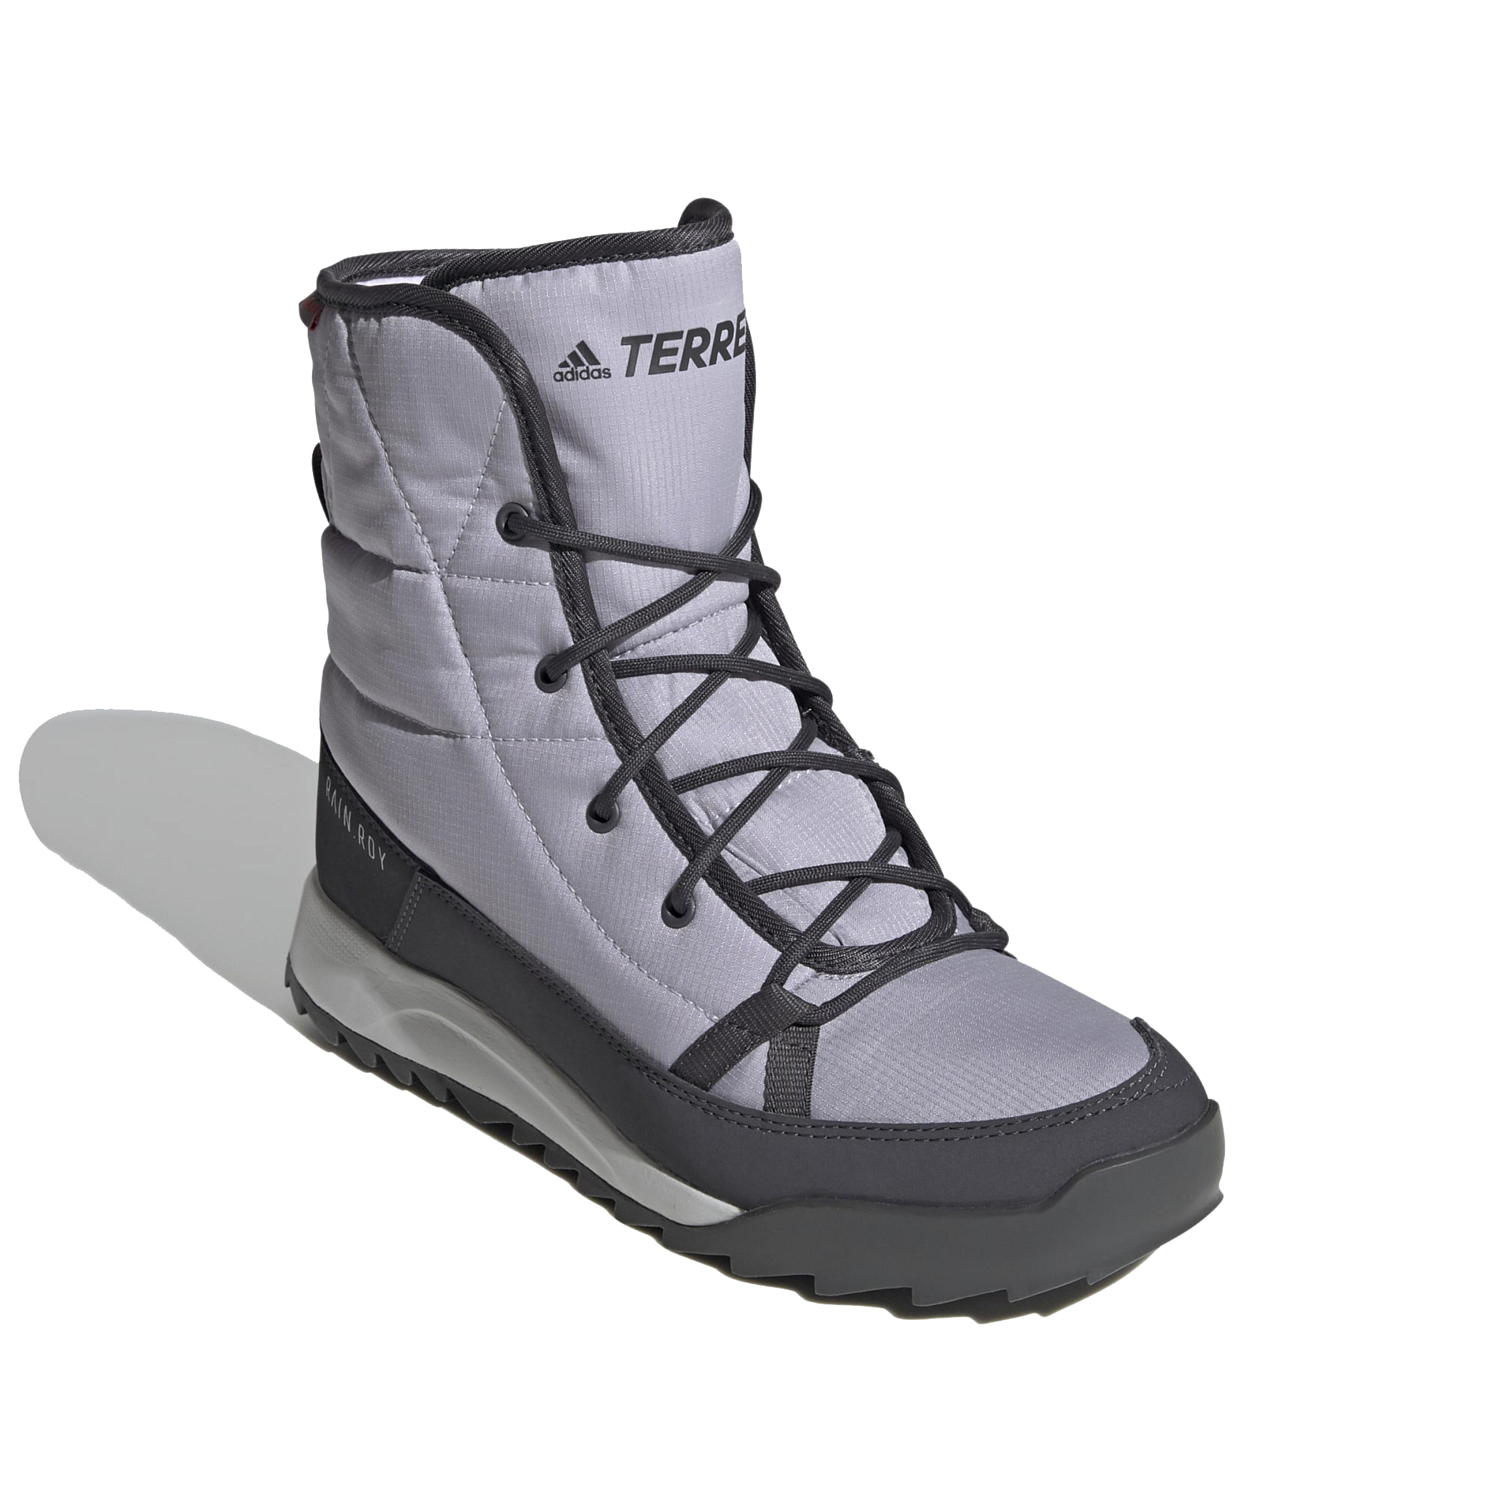 Ботинки Adidas 2020-21 TERREX CHOLEAH PADDED CLIMAPROOF Glory Grey/Dgh Solid Grey/Purple Tint